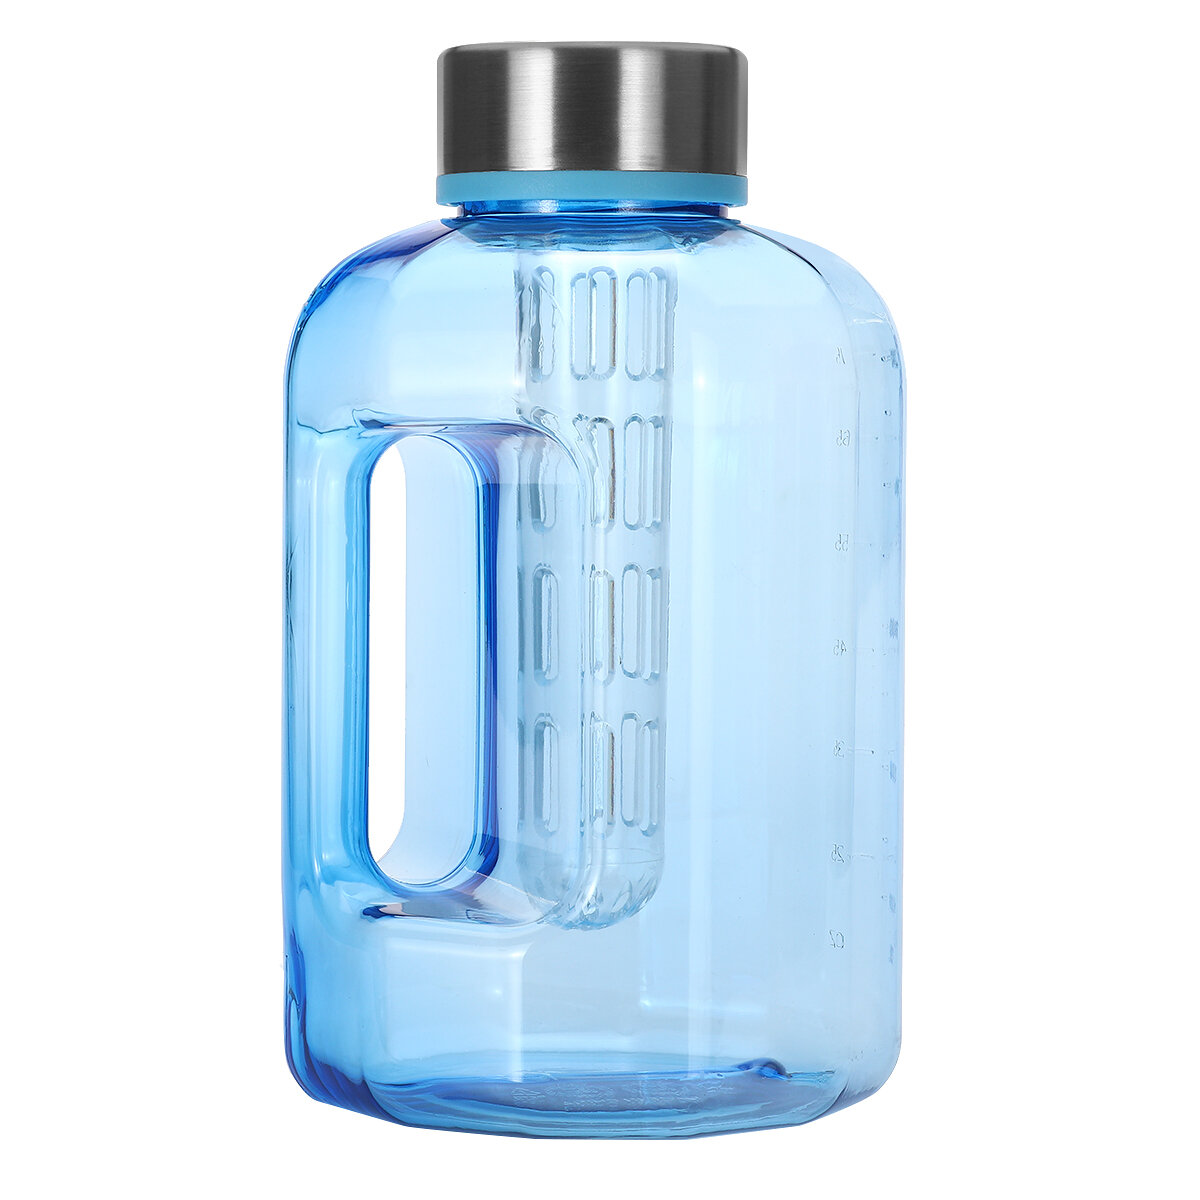 oße Sport-Trinkflasche mit 2,2L/84oz Fassungsvermögen ohne BPA mit Deckel für das Training im Fitnessstudio, Wandern und Radfahren.